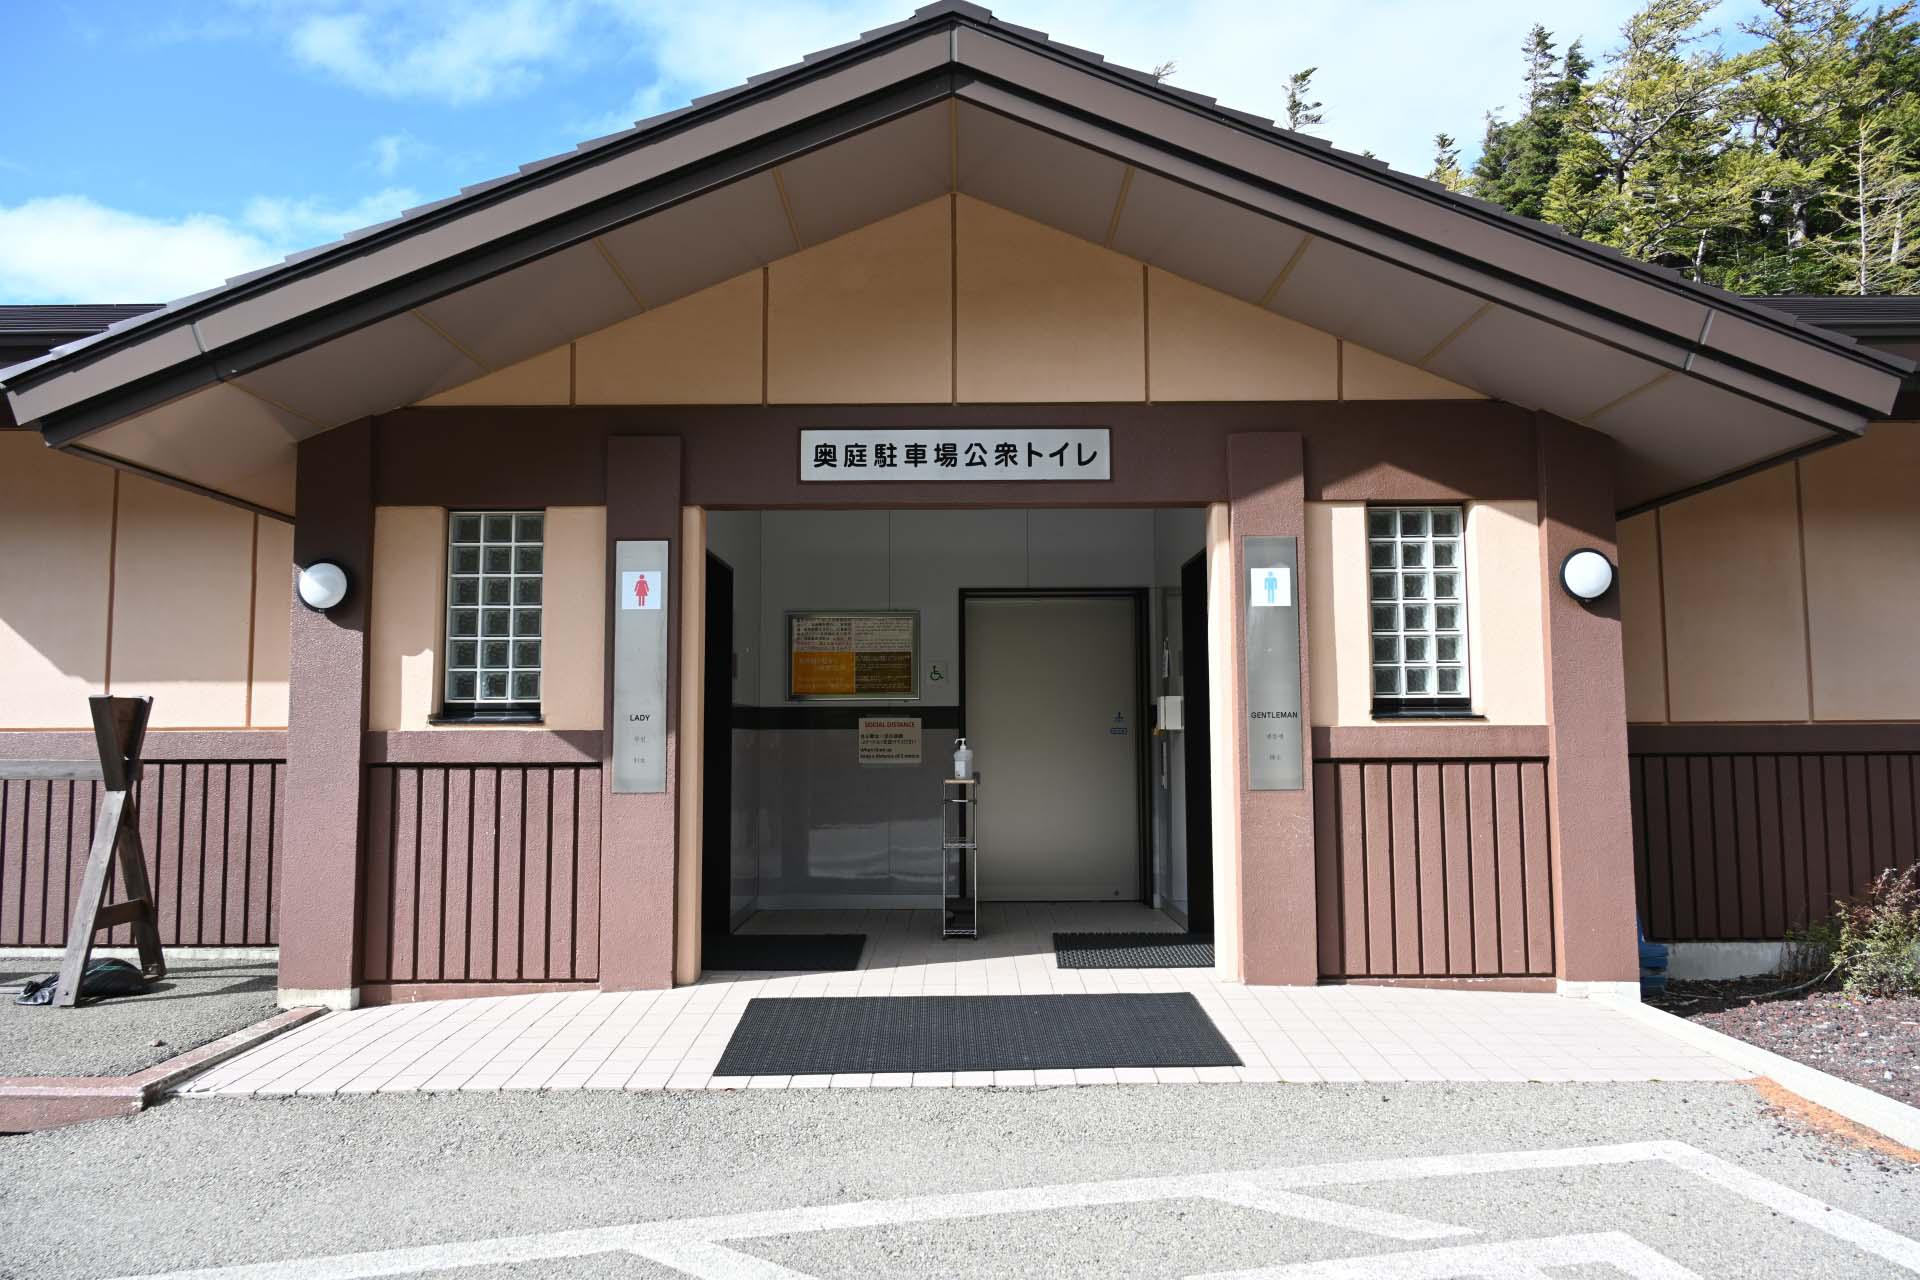 日本公廁示意圖